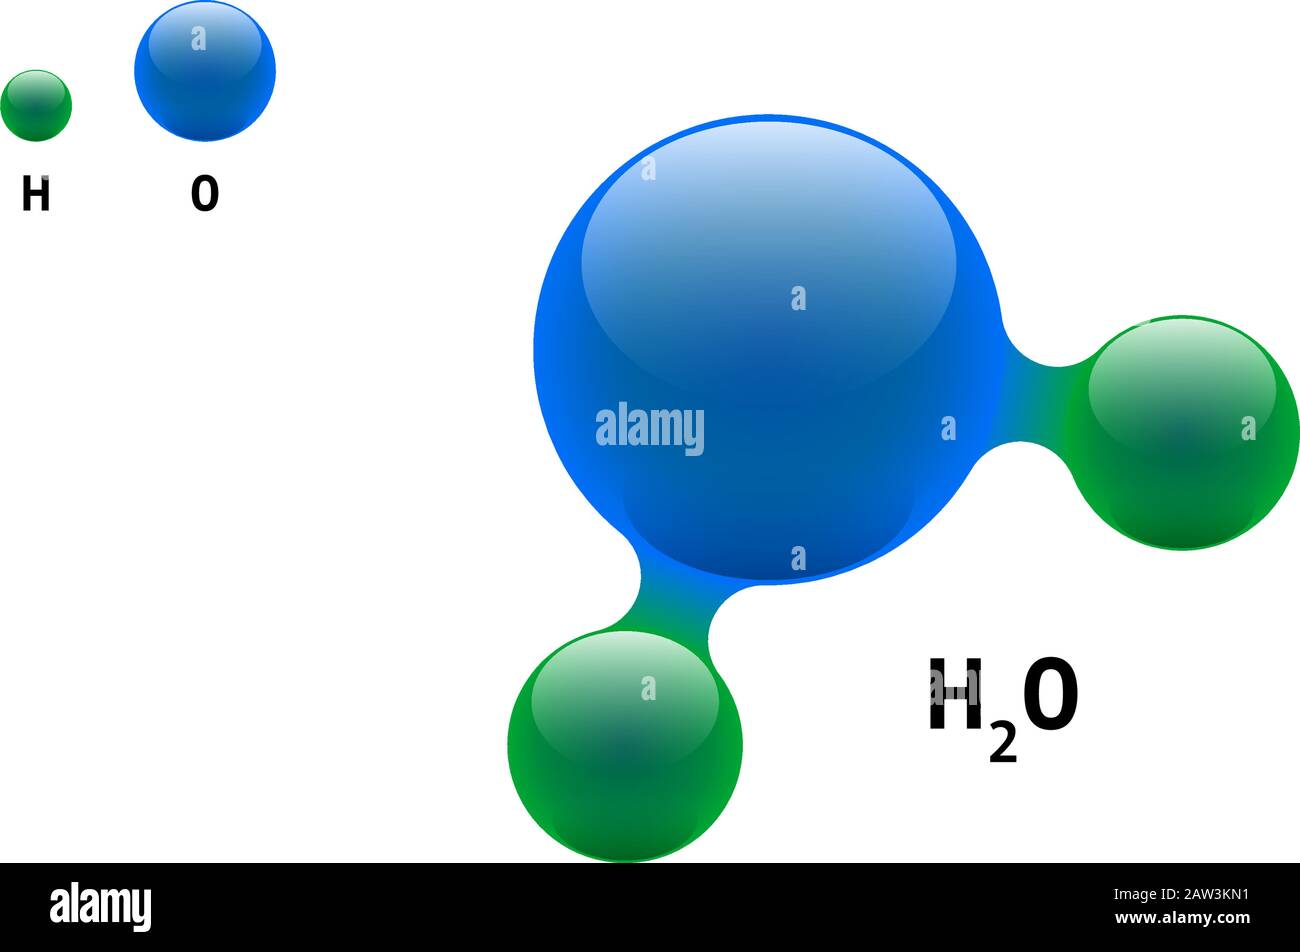 Water h2o immagini e fotografie stock ad alta risoluzione - Alamy